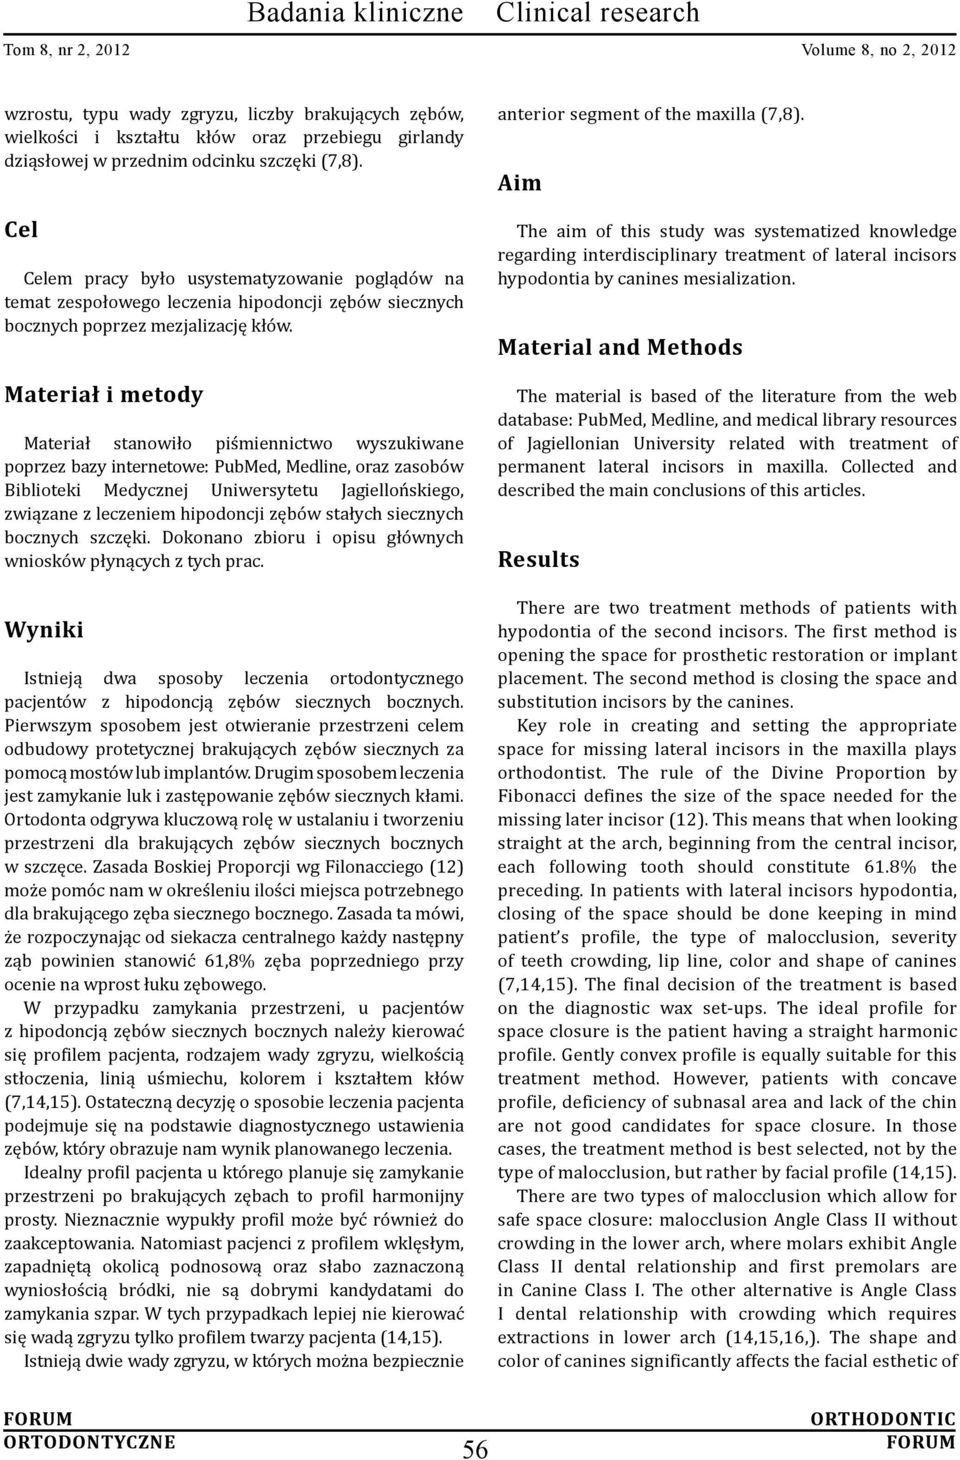 Materiał i metody Materiał stanowiło piśmiennictwo wyszukiwane poprzez bazy internetowe: PubMed, Medline, oraz zasobów Biblioteki Medycznej Uniwersytetu Jagiellońskiego, związane z leczeniem